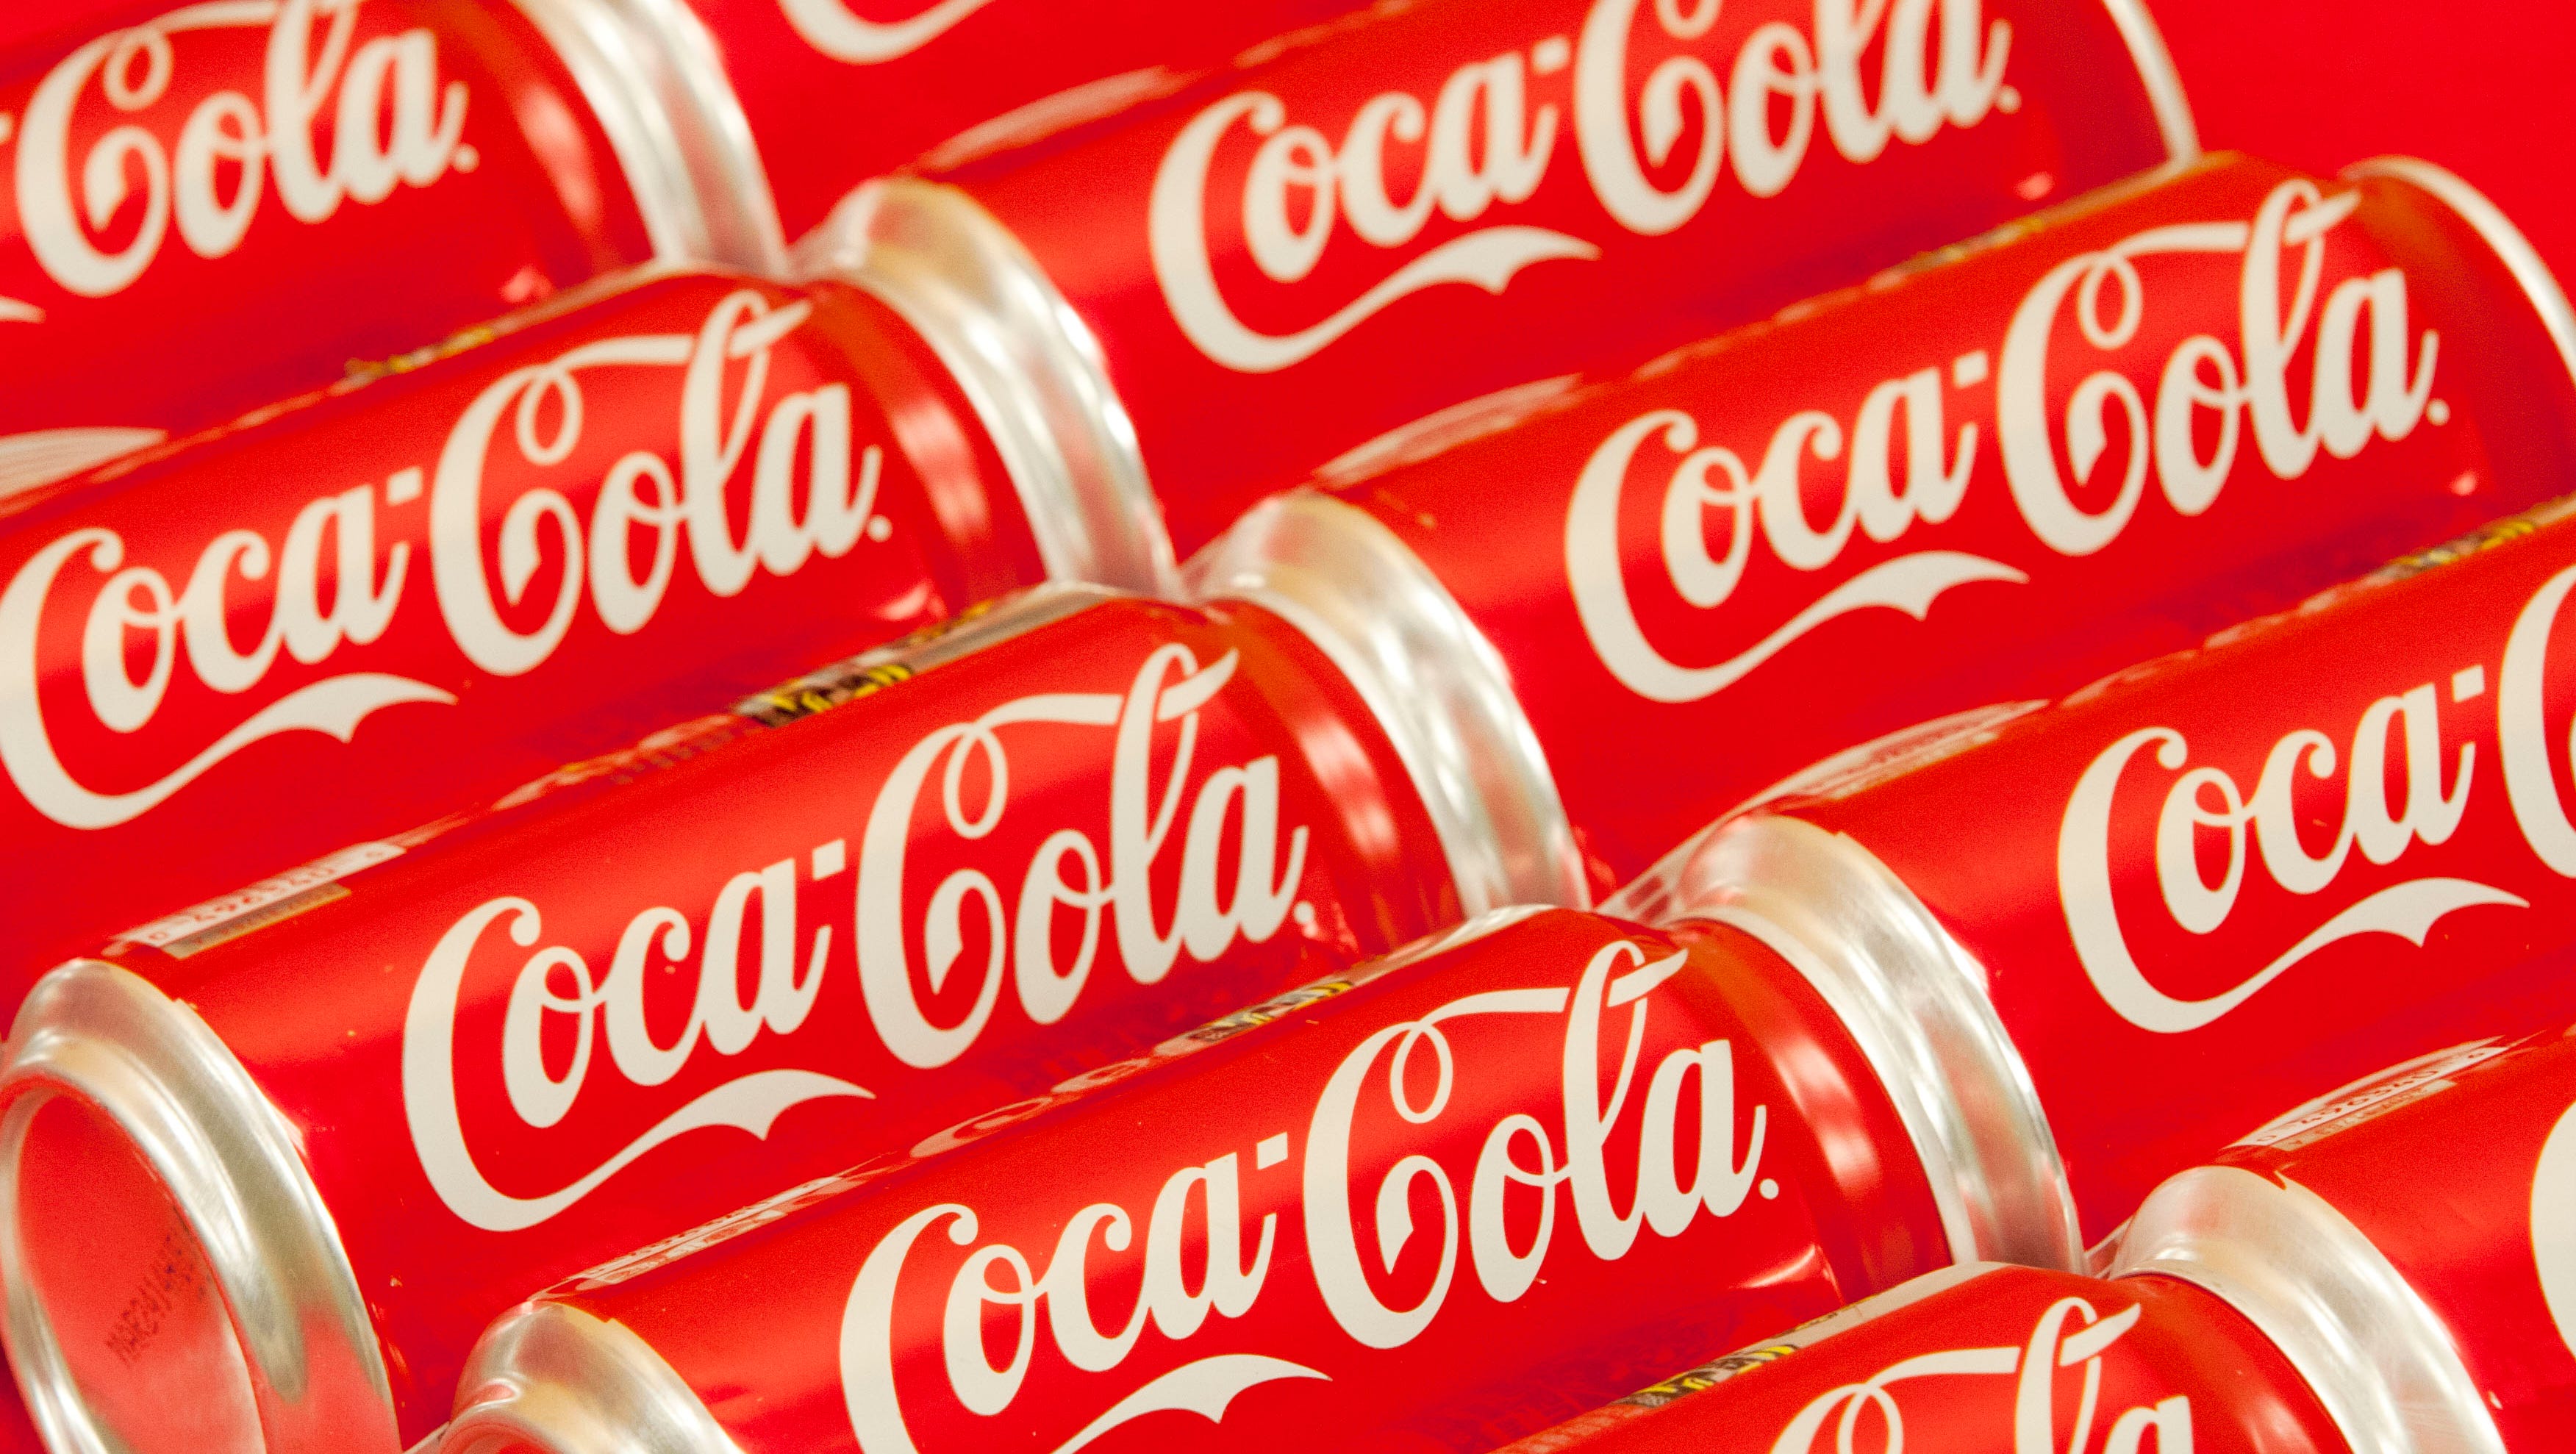 Spanish town claims origins of Coca-Cola